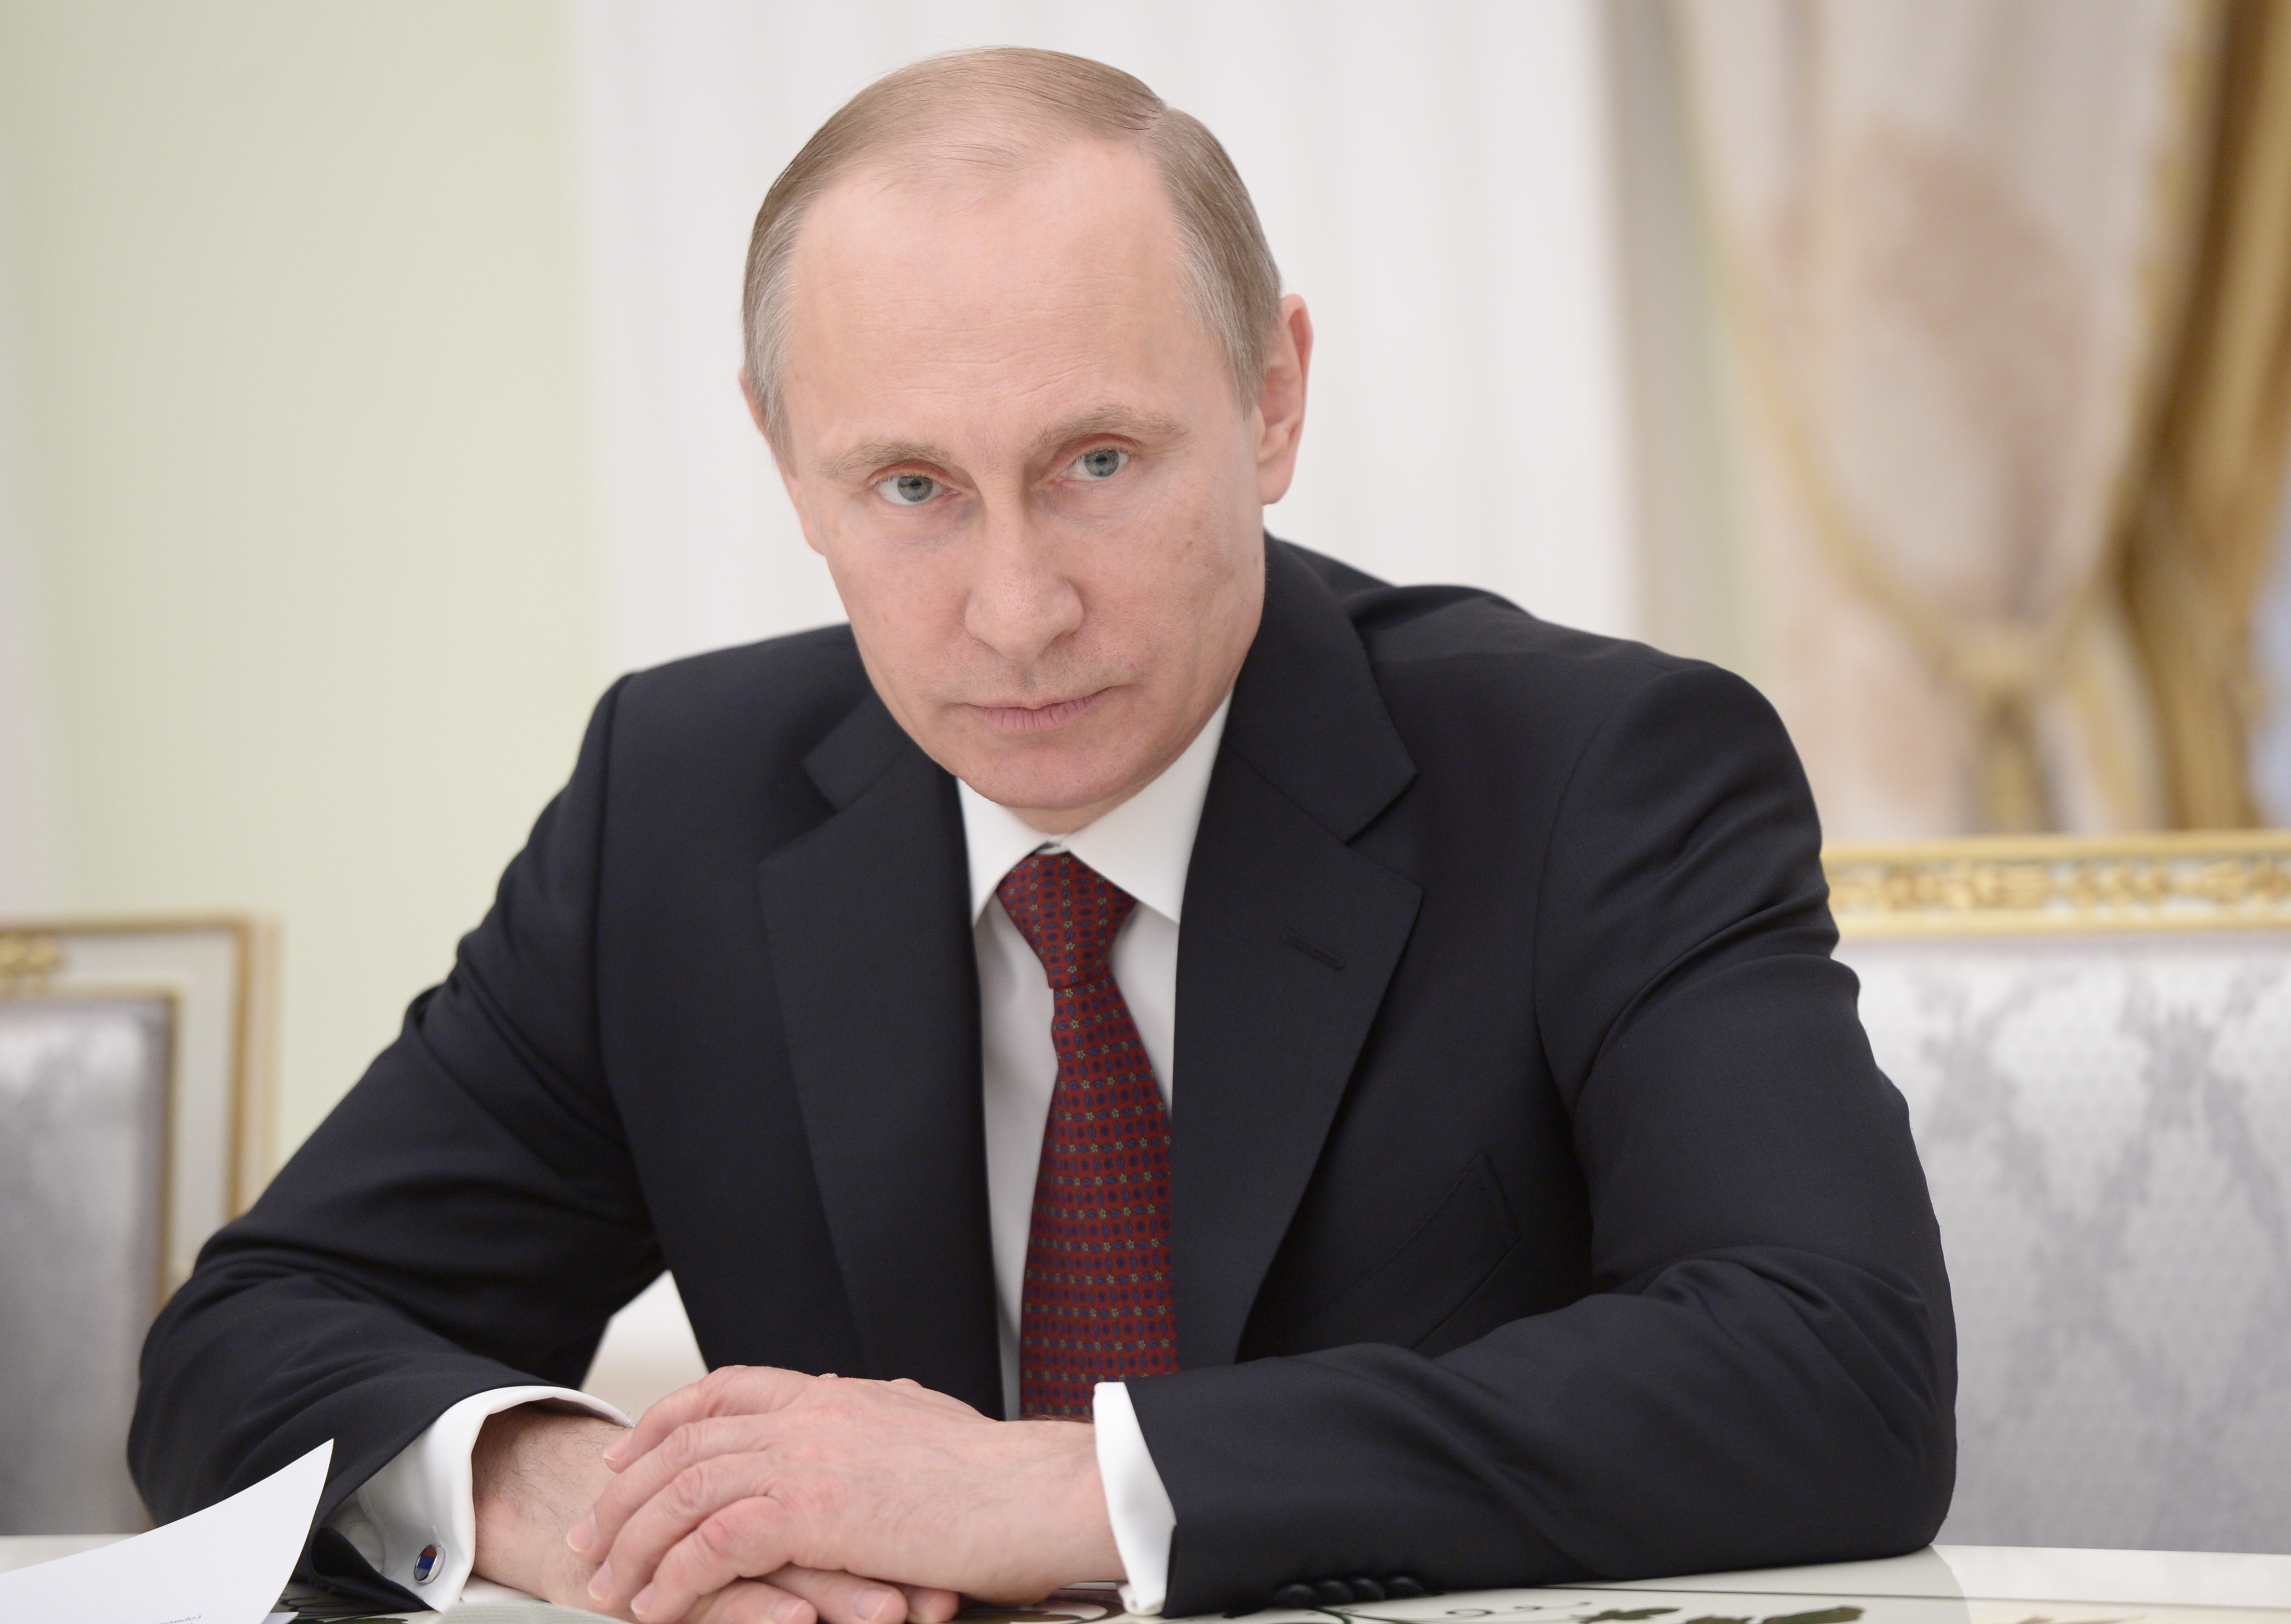 Вопрос предрешенный: озвучены сценарии выдвижения Путина на выборы в 2018